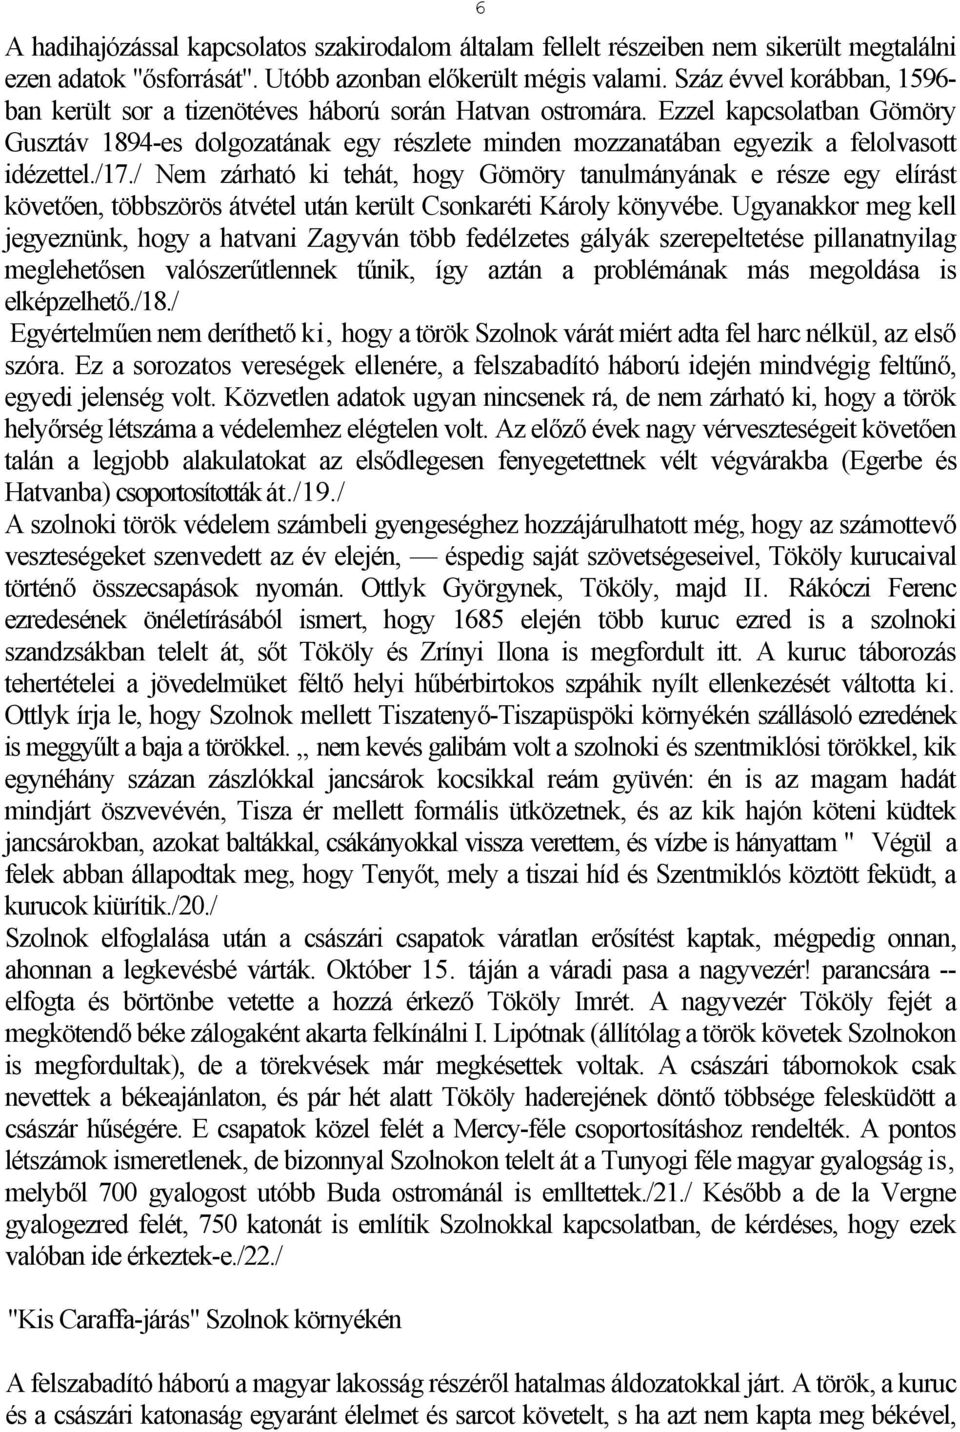 Ezzel kapcsolatban Gömöry Gusztáv 1894-es dolgozatának egy részlete minden mozzanatában egyezik a felolvasott idézettel./17.